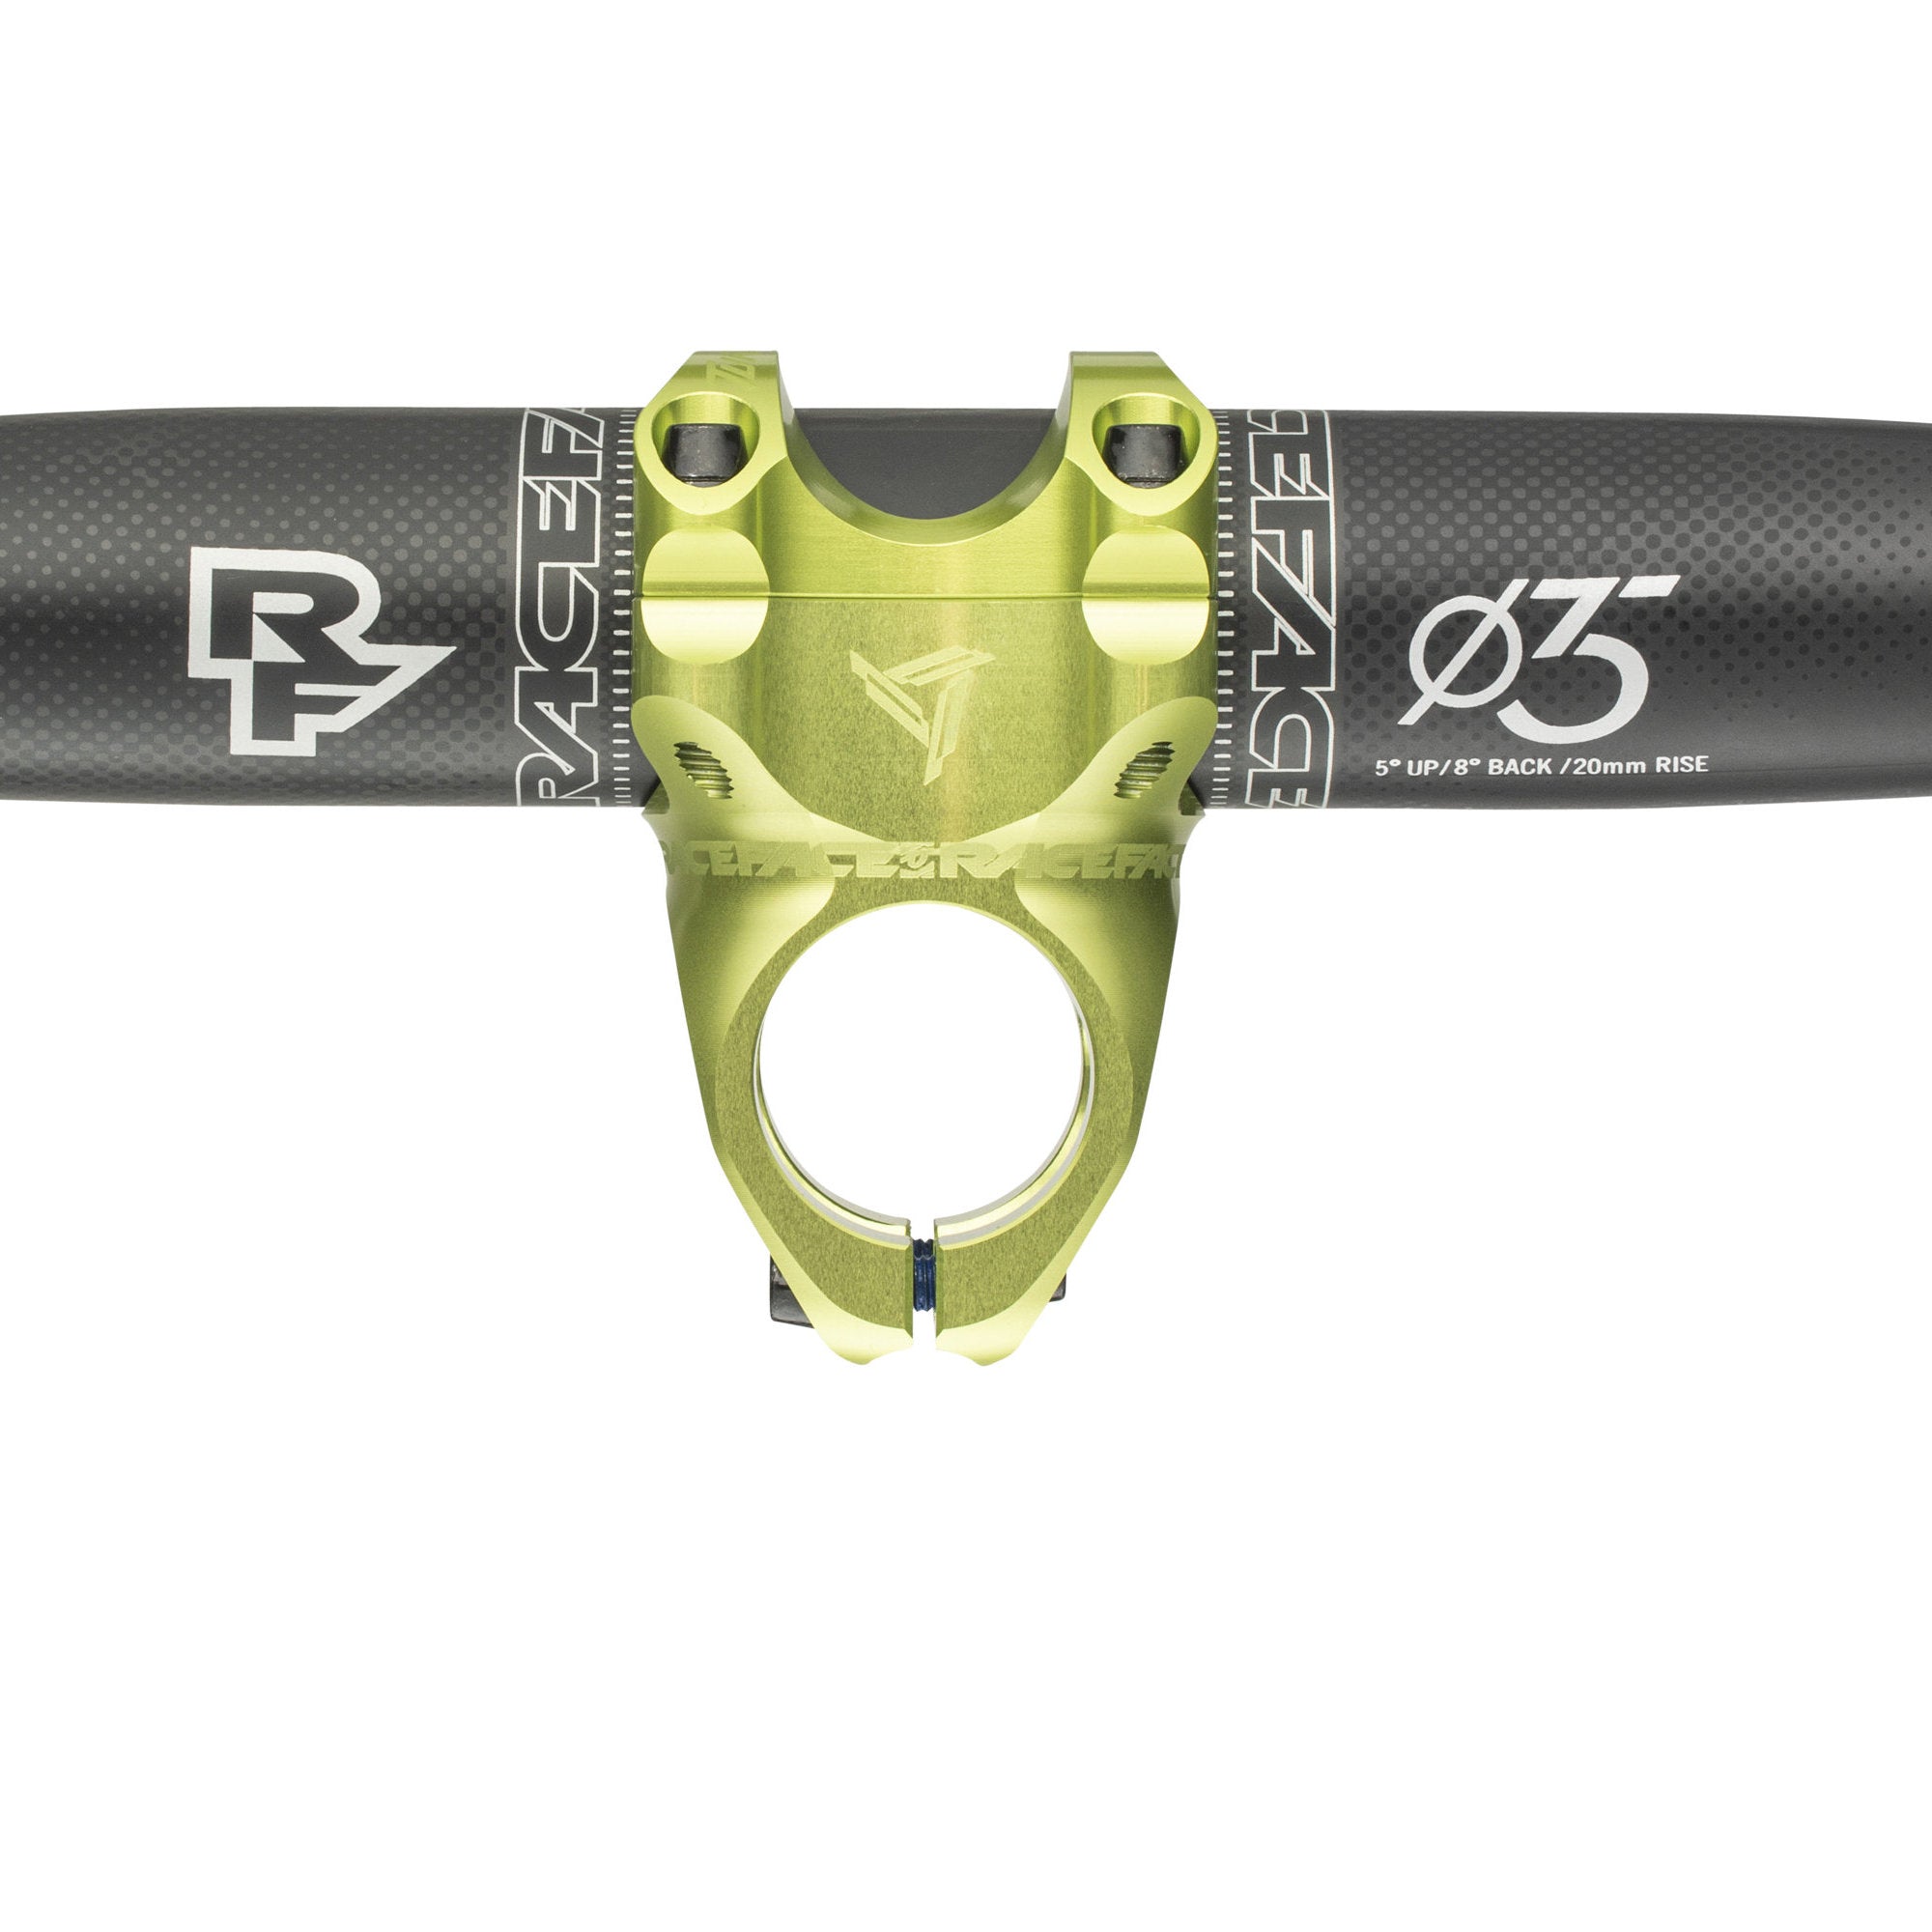 Race Face Turbine R 0 Degrees 35mm Bike Stem Green 50mm Alternate 3